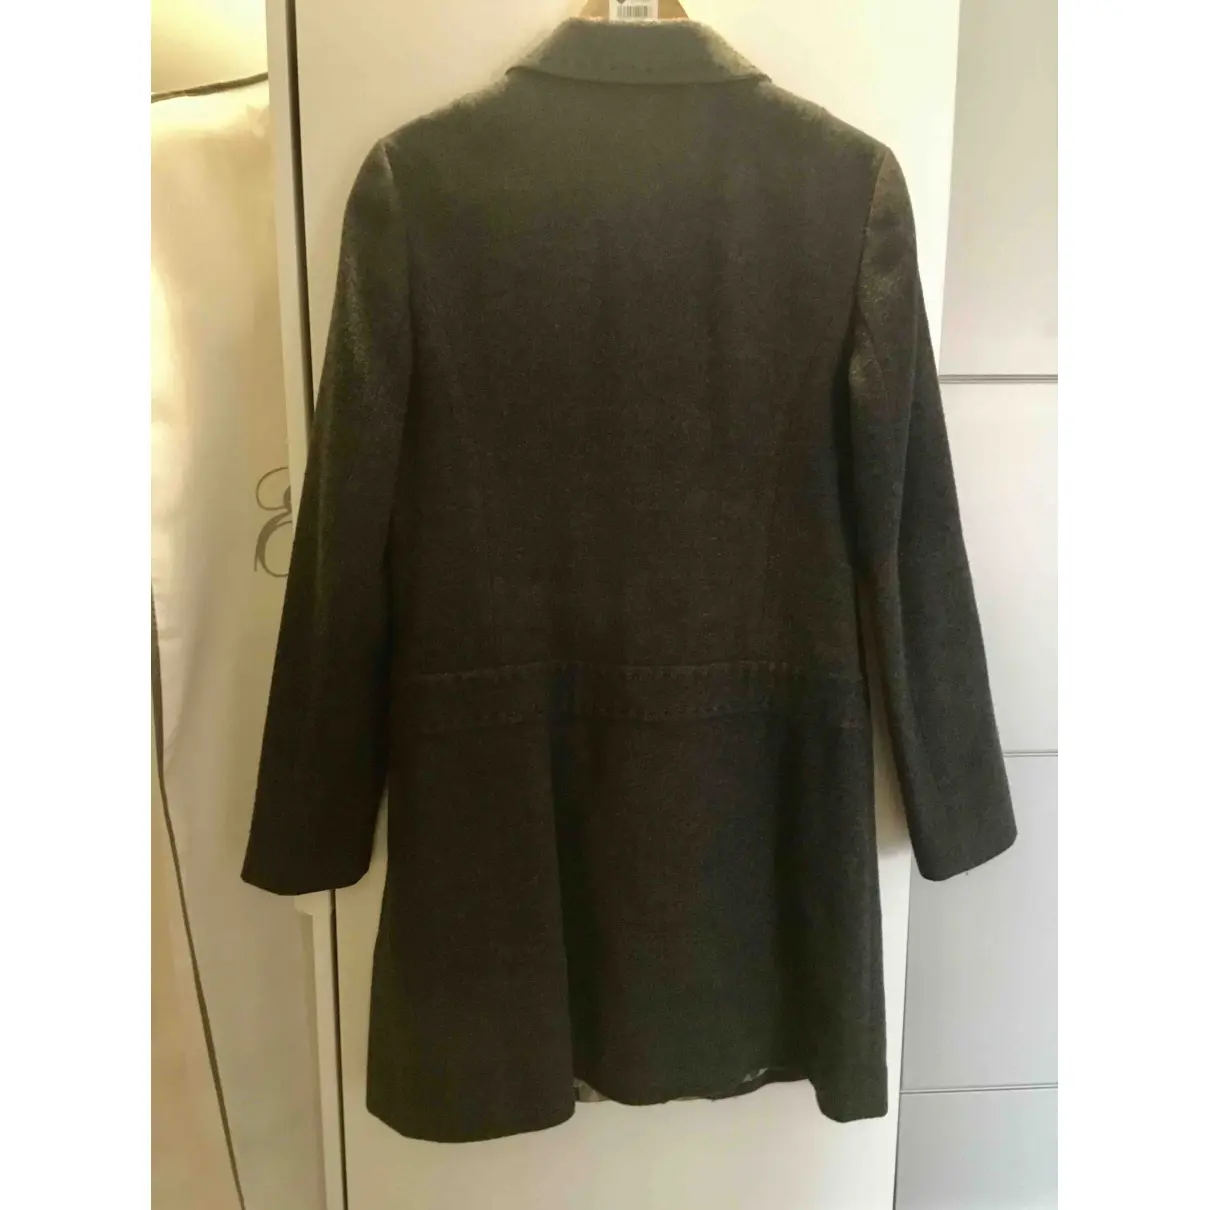 Buy Cold Method Wool coat online